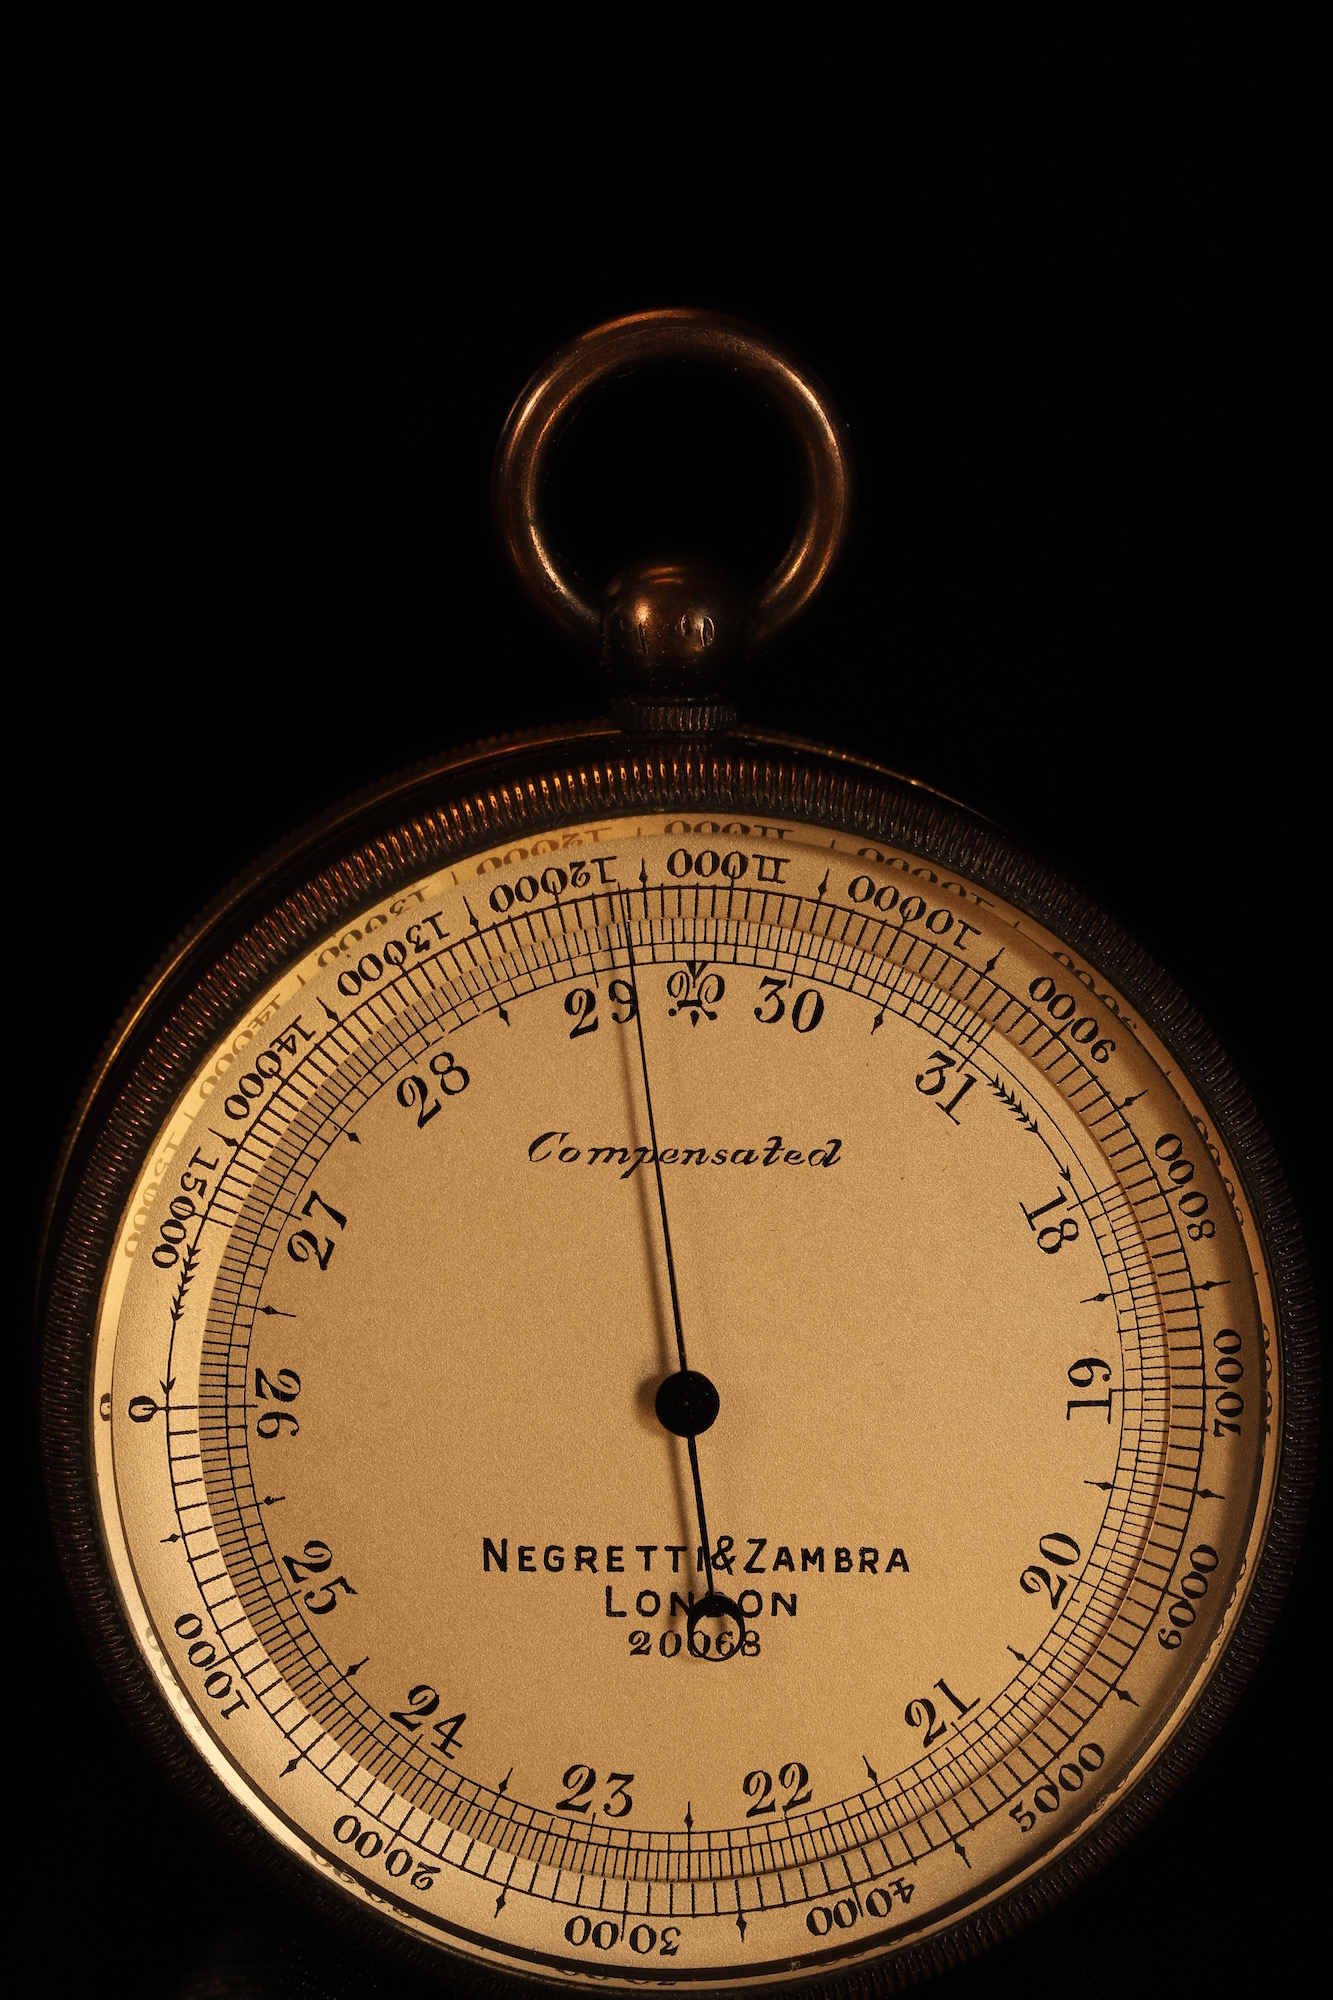 Image of Negretti & Zambra Pocket Barometer Compendium No 20068 c1905